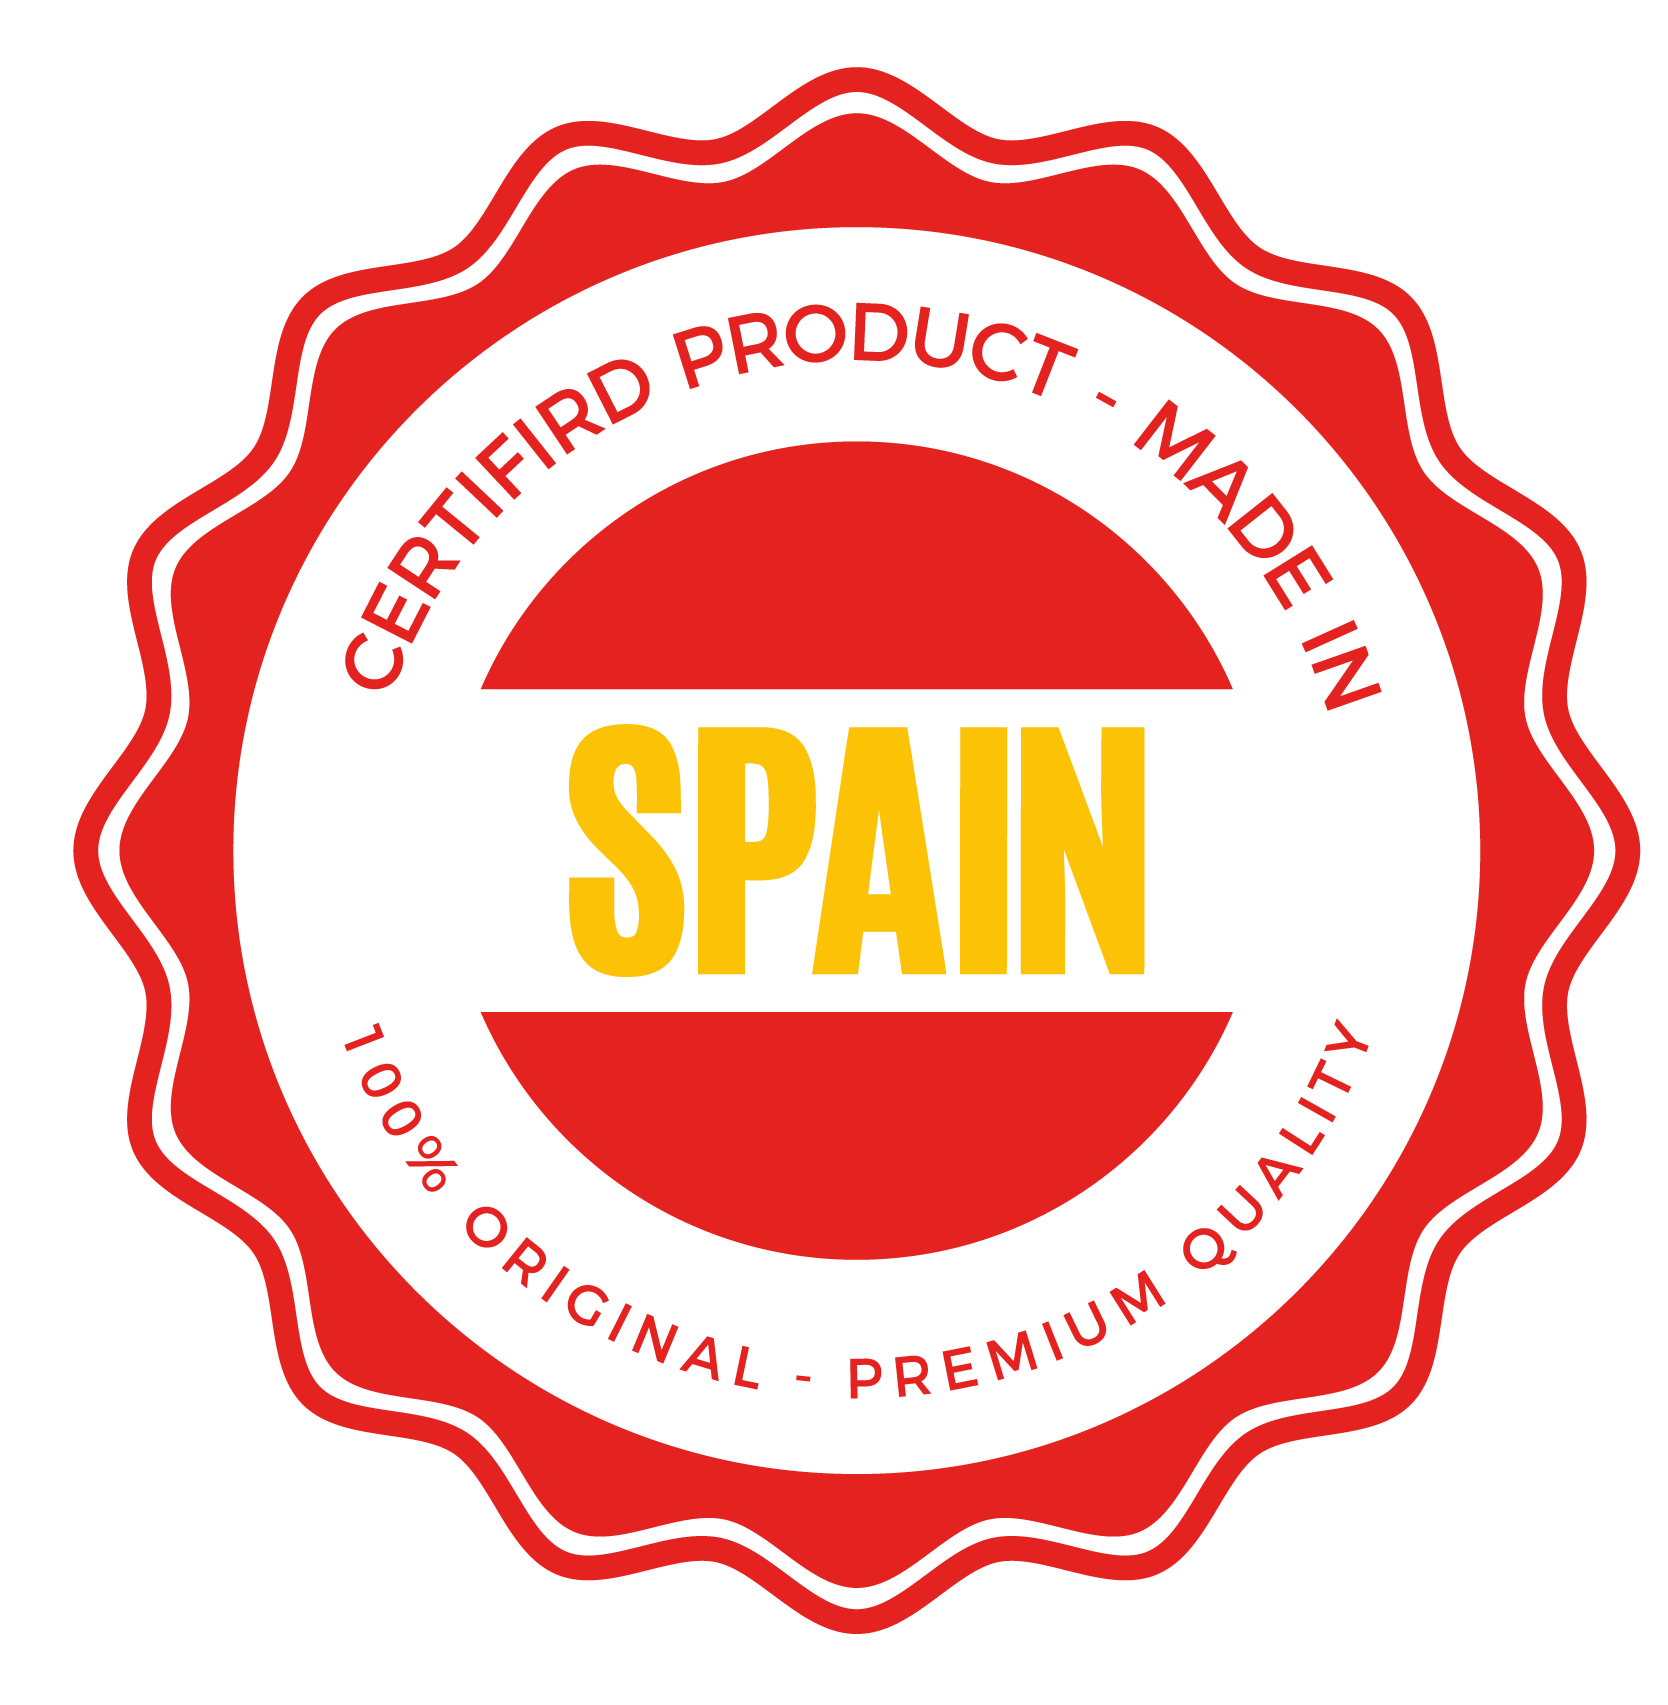 Sello de producto certificado made in Spain